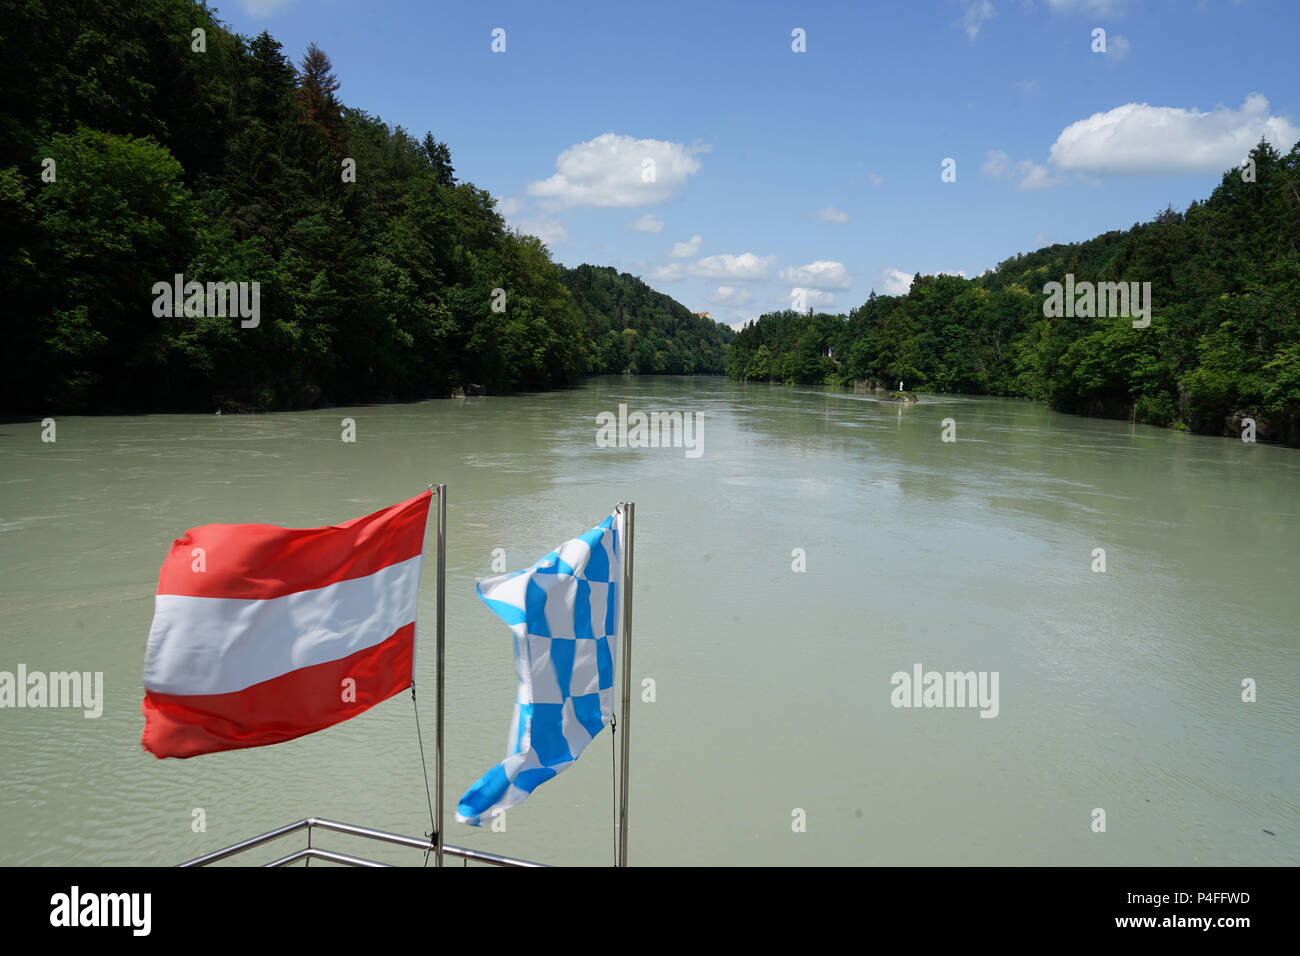 Pavillon de l'Autriche et la Bavière,Vue d'Vornbacher Enge, excursion en bateau à partir de Paris à Passau sur la rivière Inn, l'Autriche et l'Allemagne, de l'Europe Banque D'Images